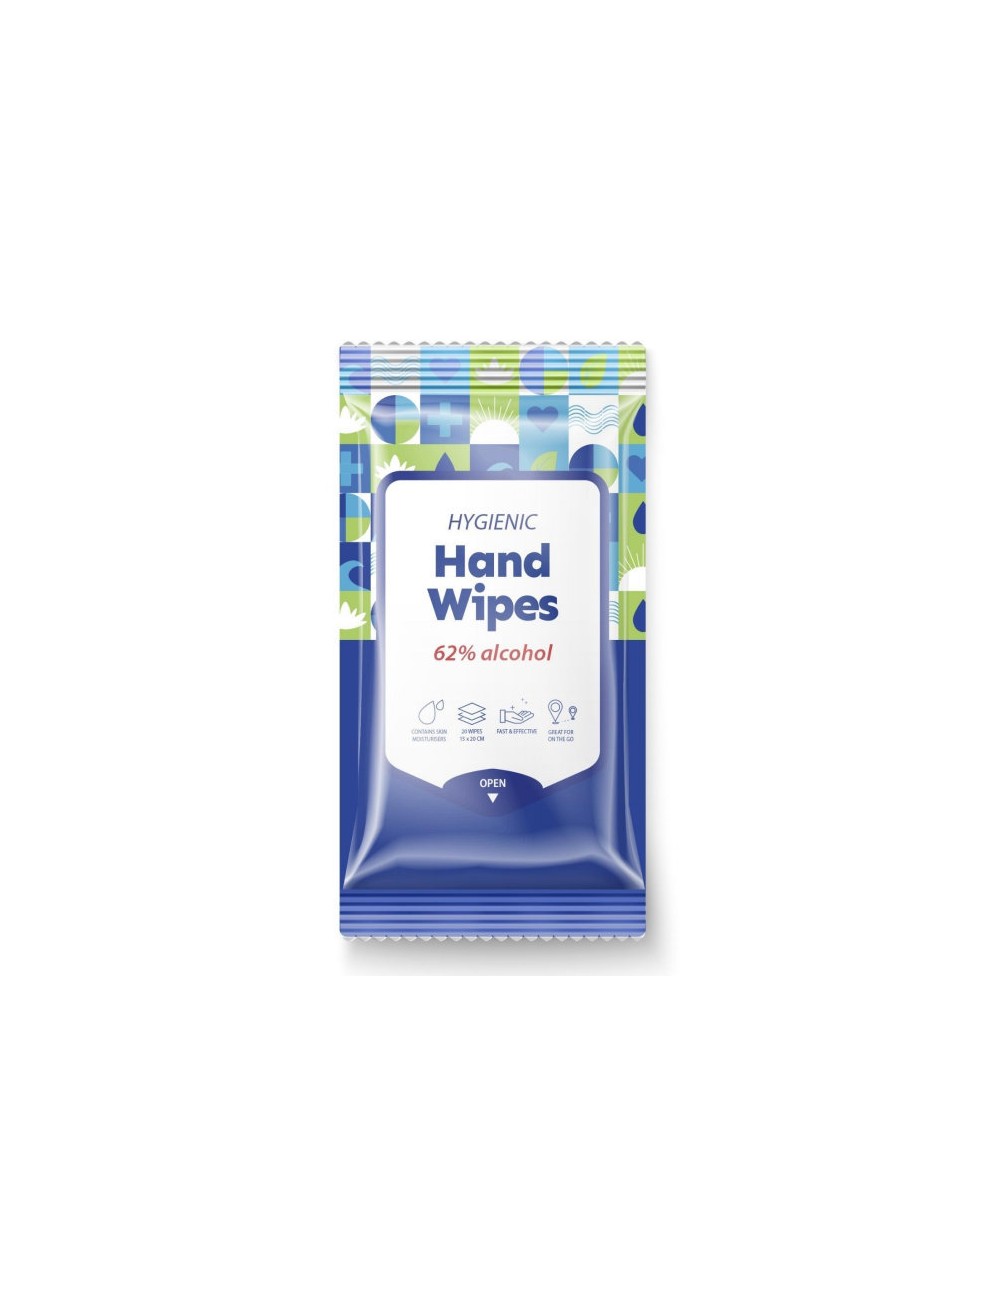 Parches y Accesorios al mejor precio: Hygienic Hand Wipes 62% alcohol Toallitas Desinfectantes de Manos de ADWIN KOREA en Skin Thinks - 